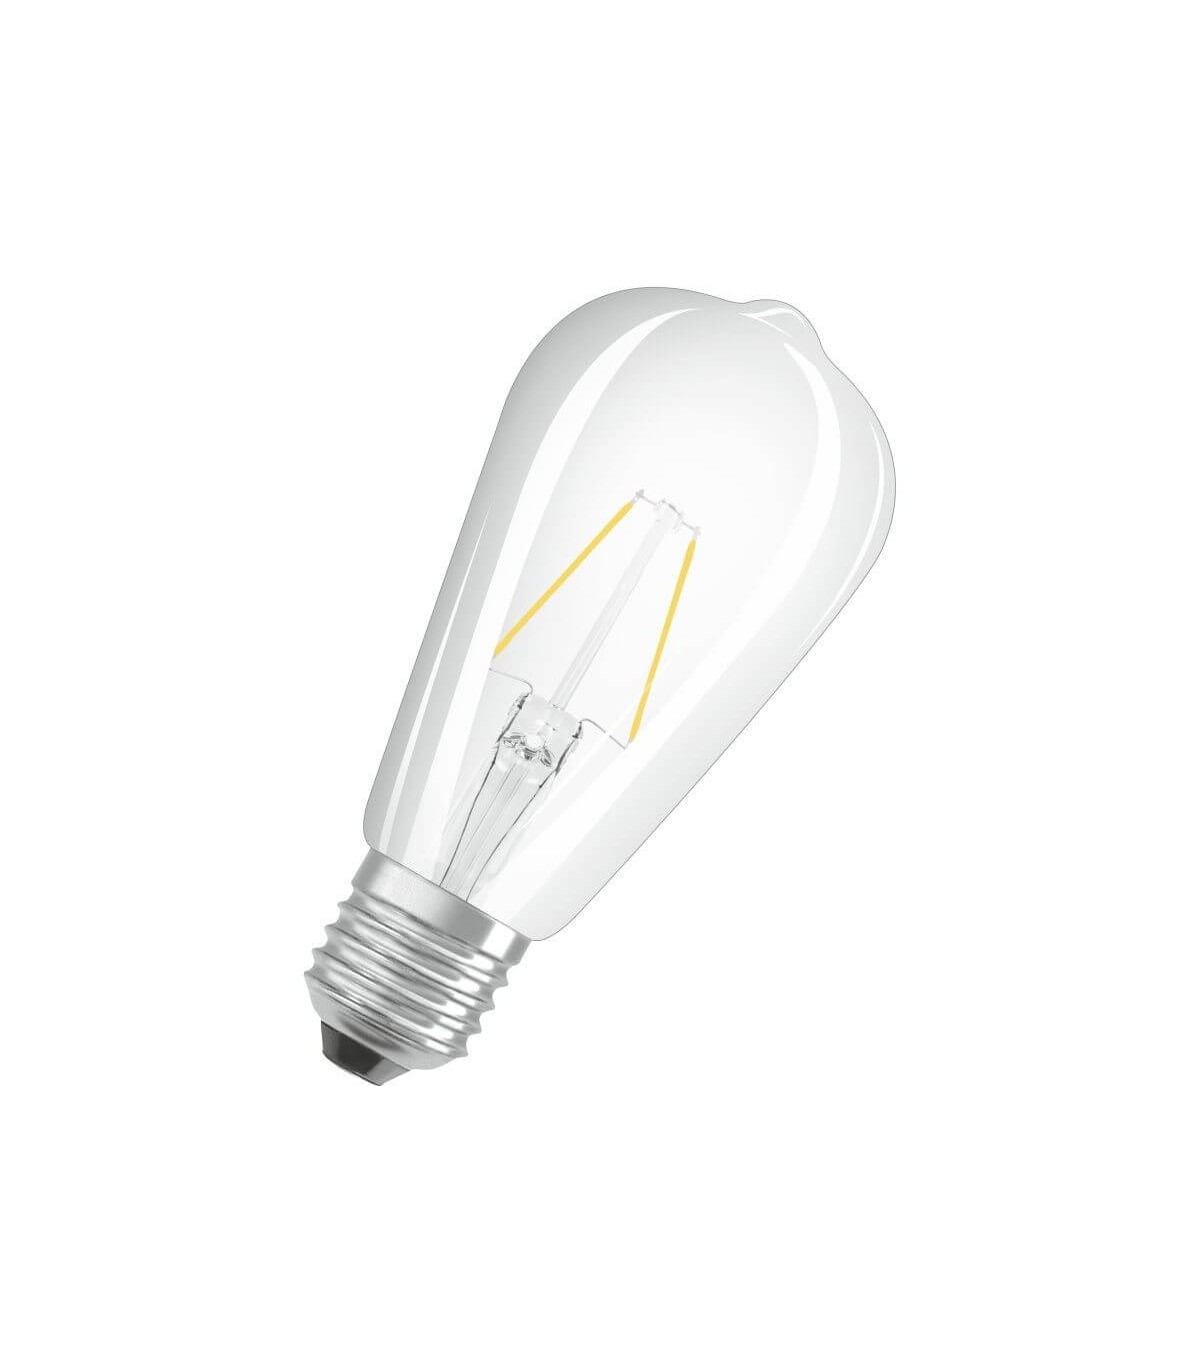 Philips ampoule LED poire filament E27 100W blanc chaud